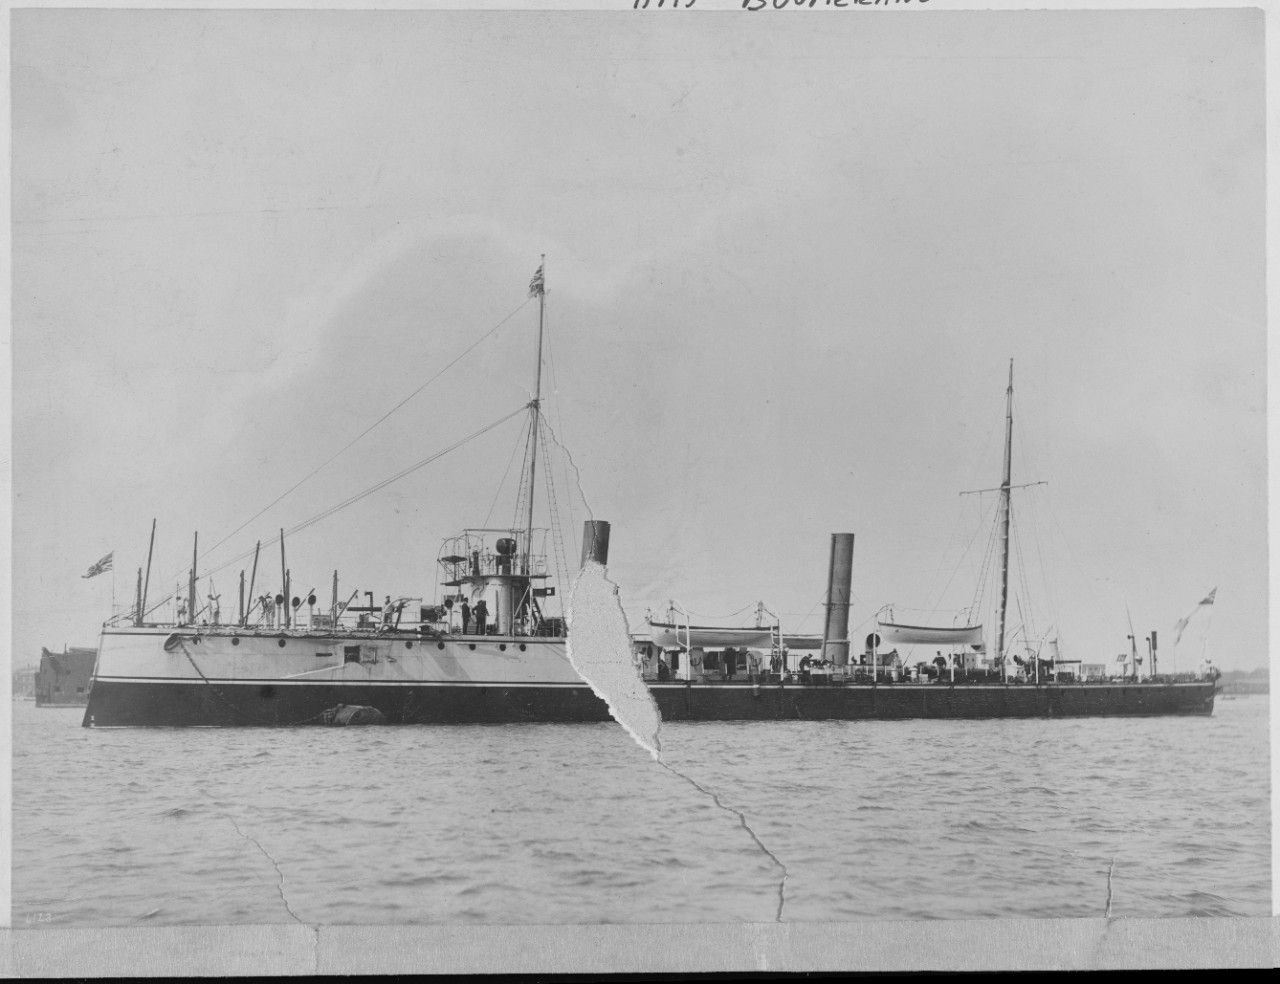 HMS BOOMERANG (Torpedo gunboat, 1892)